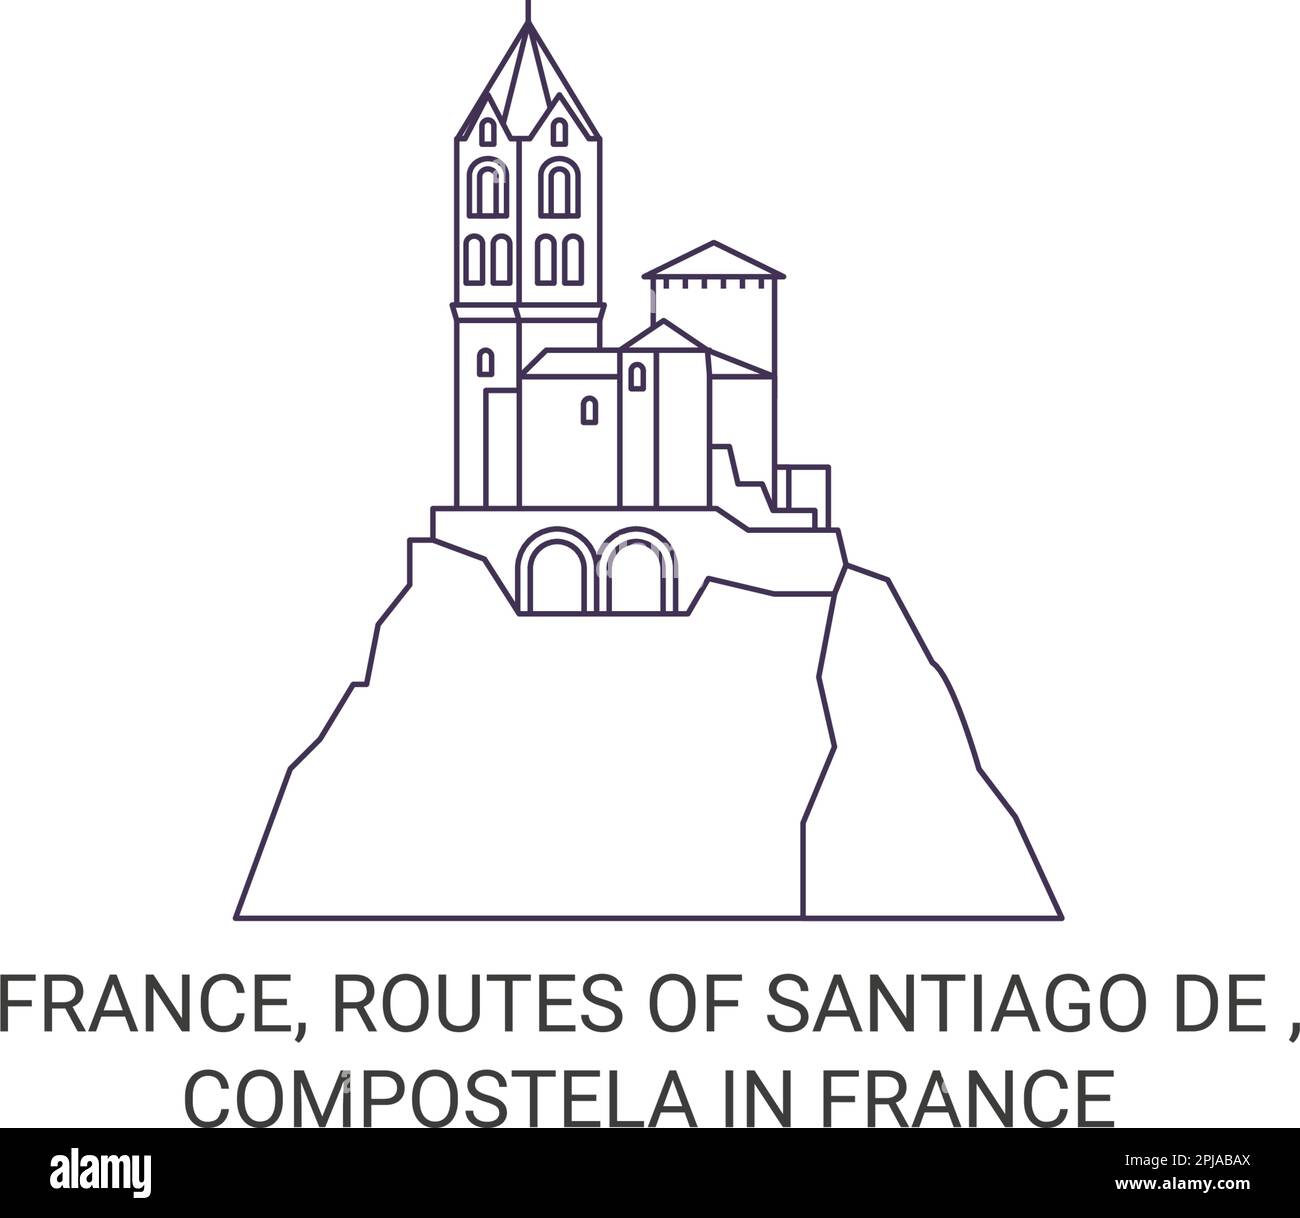 Frankreich, Routes of Santiago De , Compostela in Frankreich Reise Landmark Vector Illustration Stock Vektor